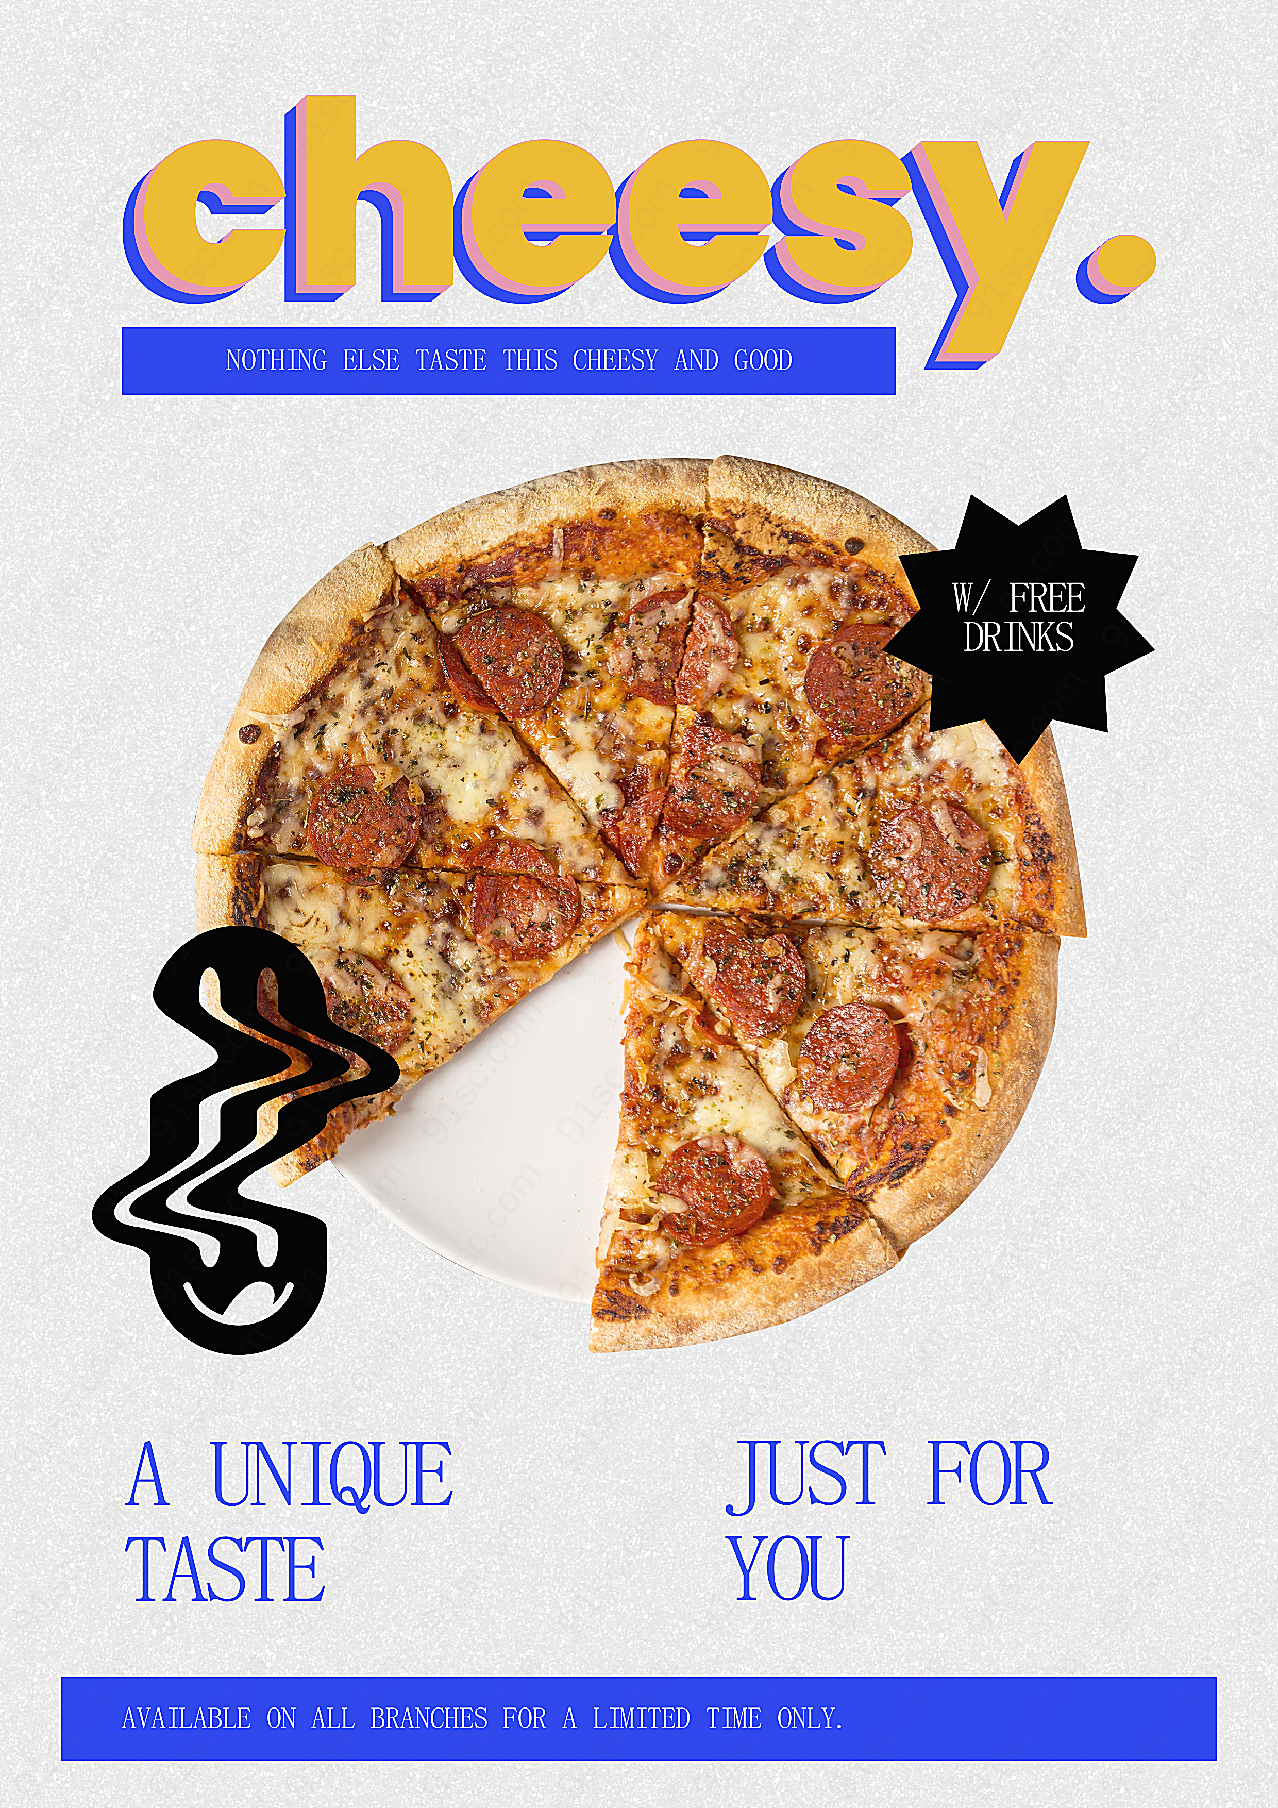 新品奶酪披萨海报广告设计